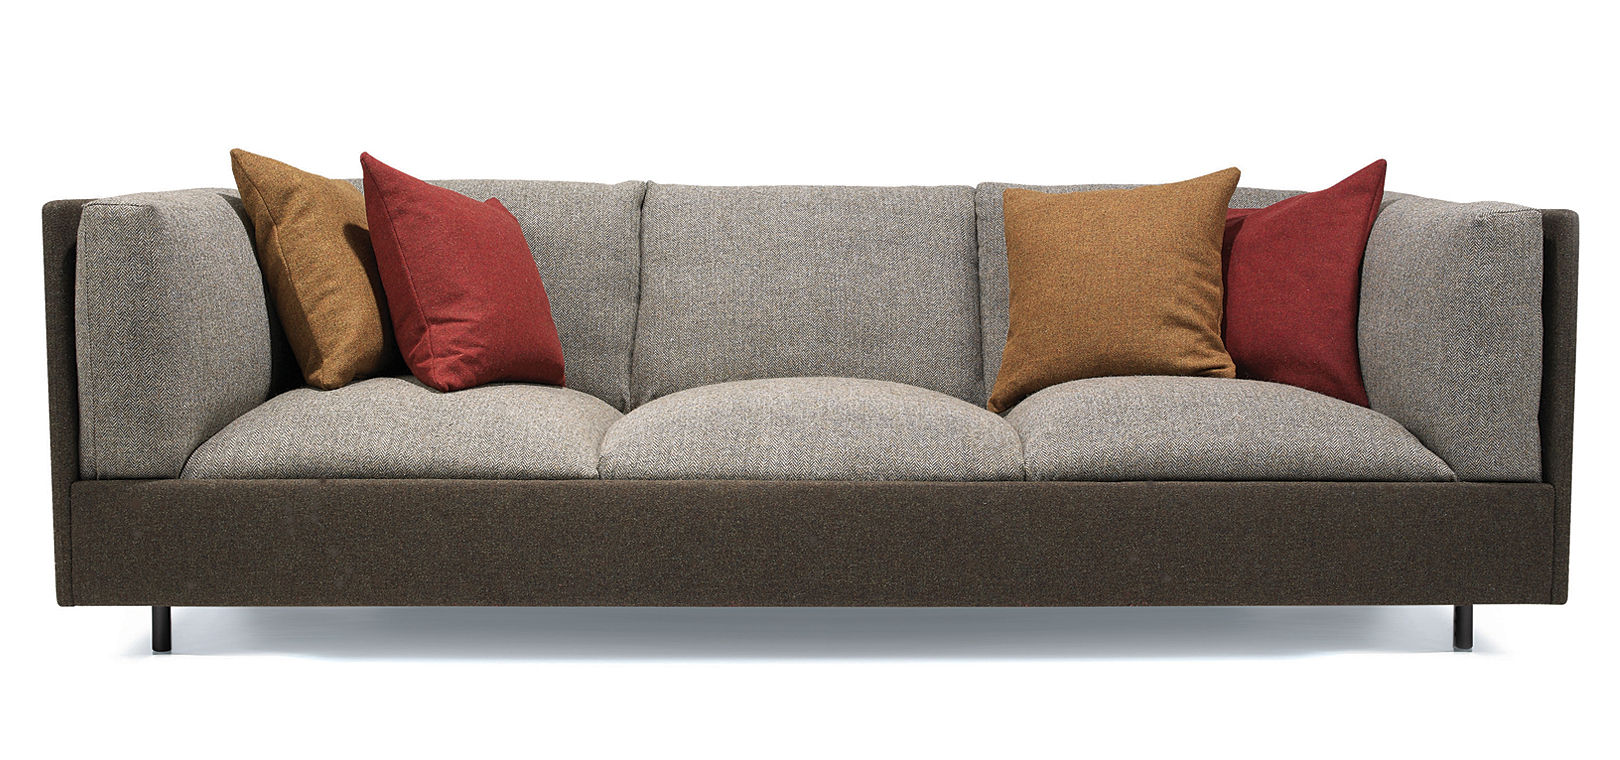 contemporary sofas elegant contemporary sofa 68 for your modern sofa inspiration with contemporary  sofa GDTPUWS